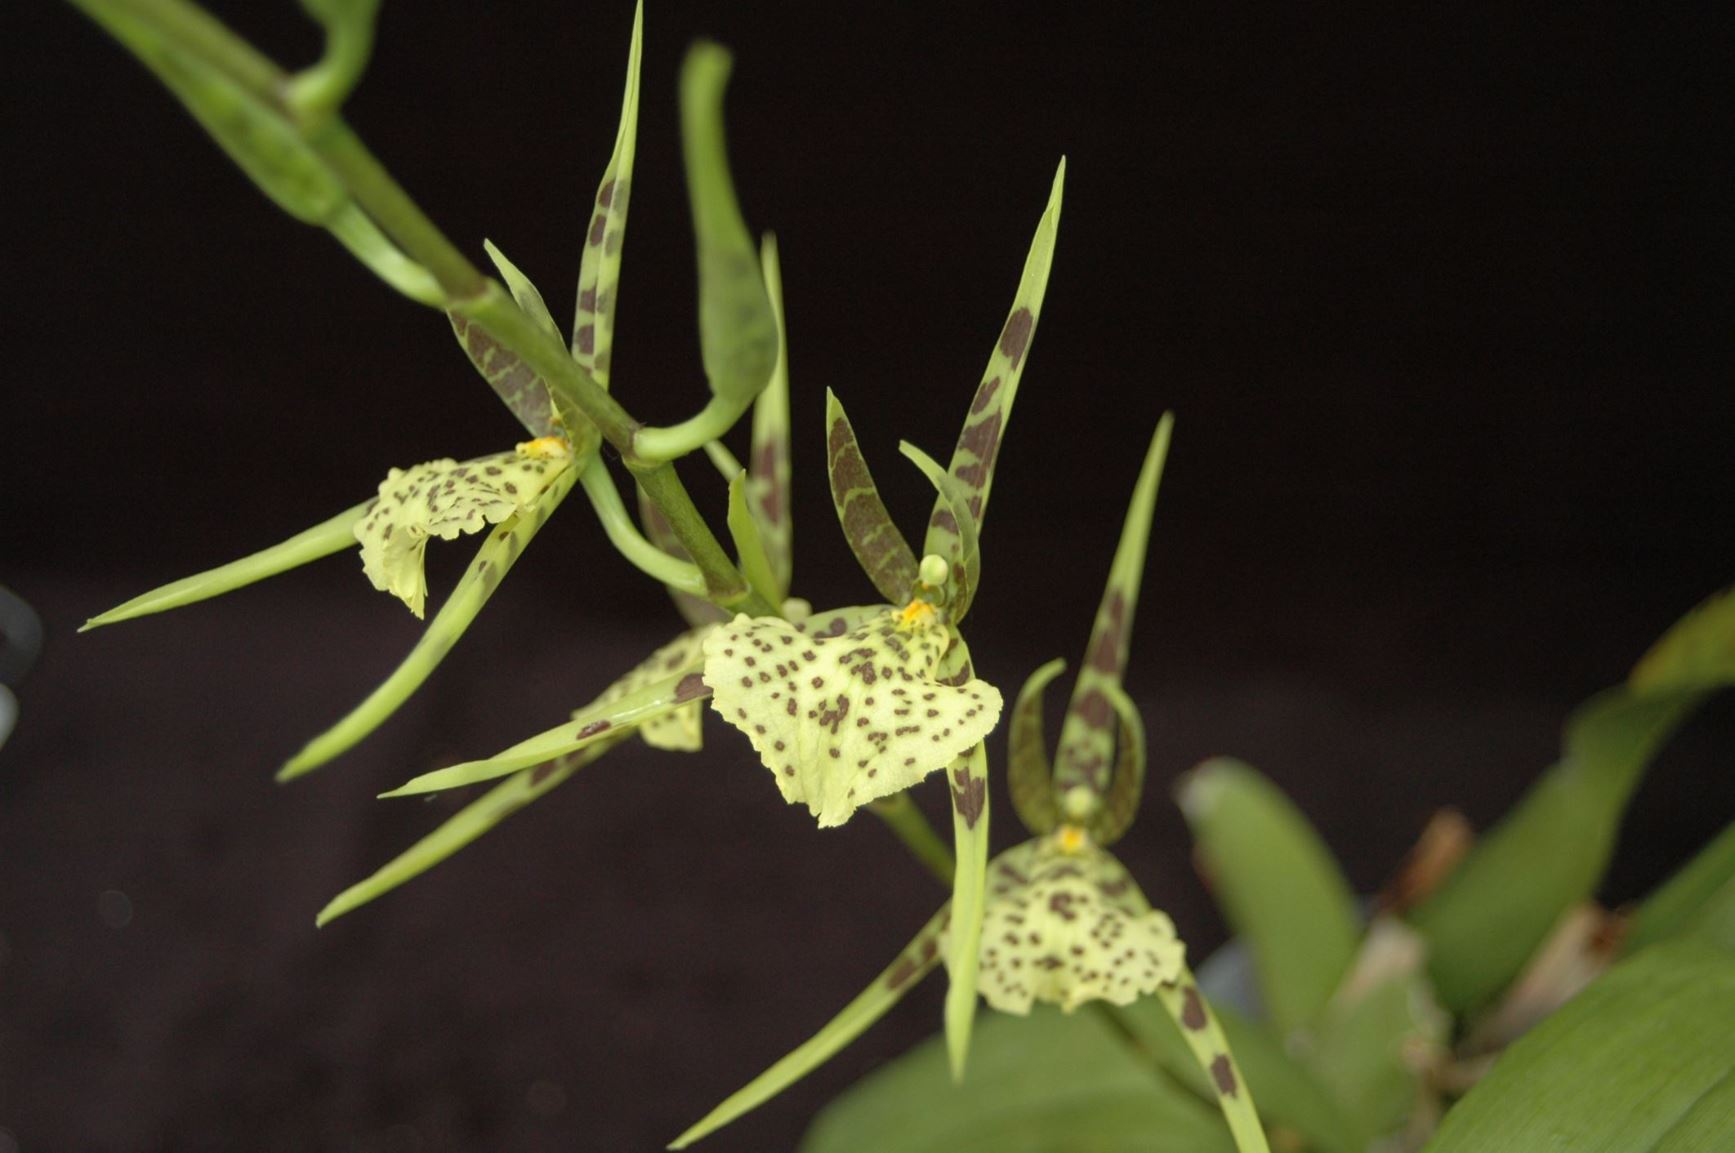 Brassia verrucosa - The Warty Brassia